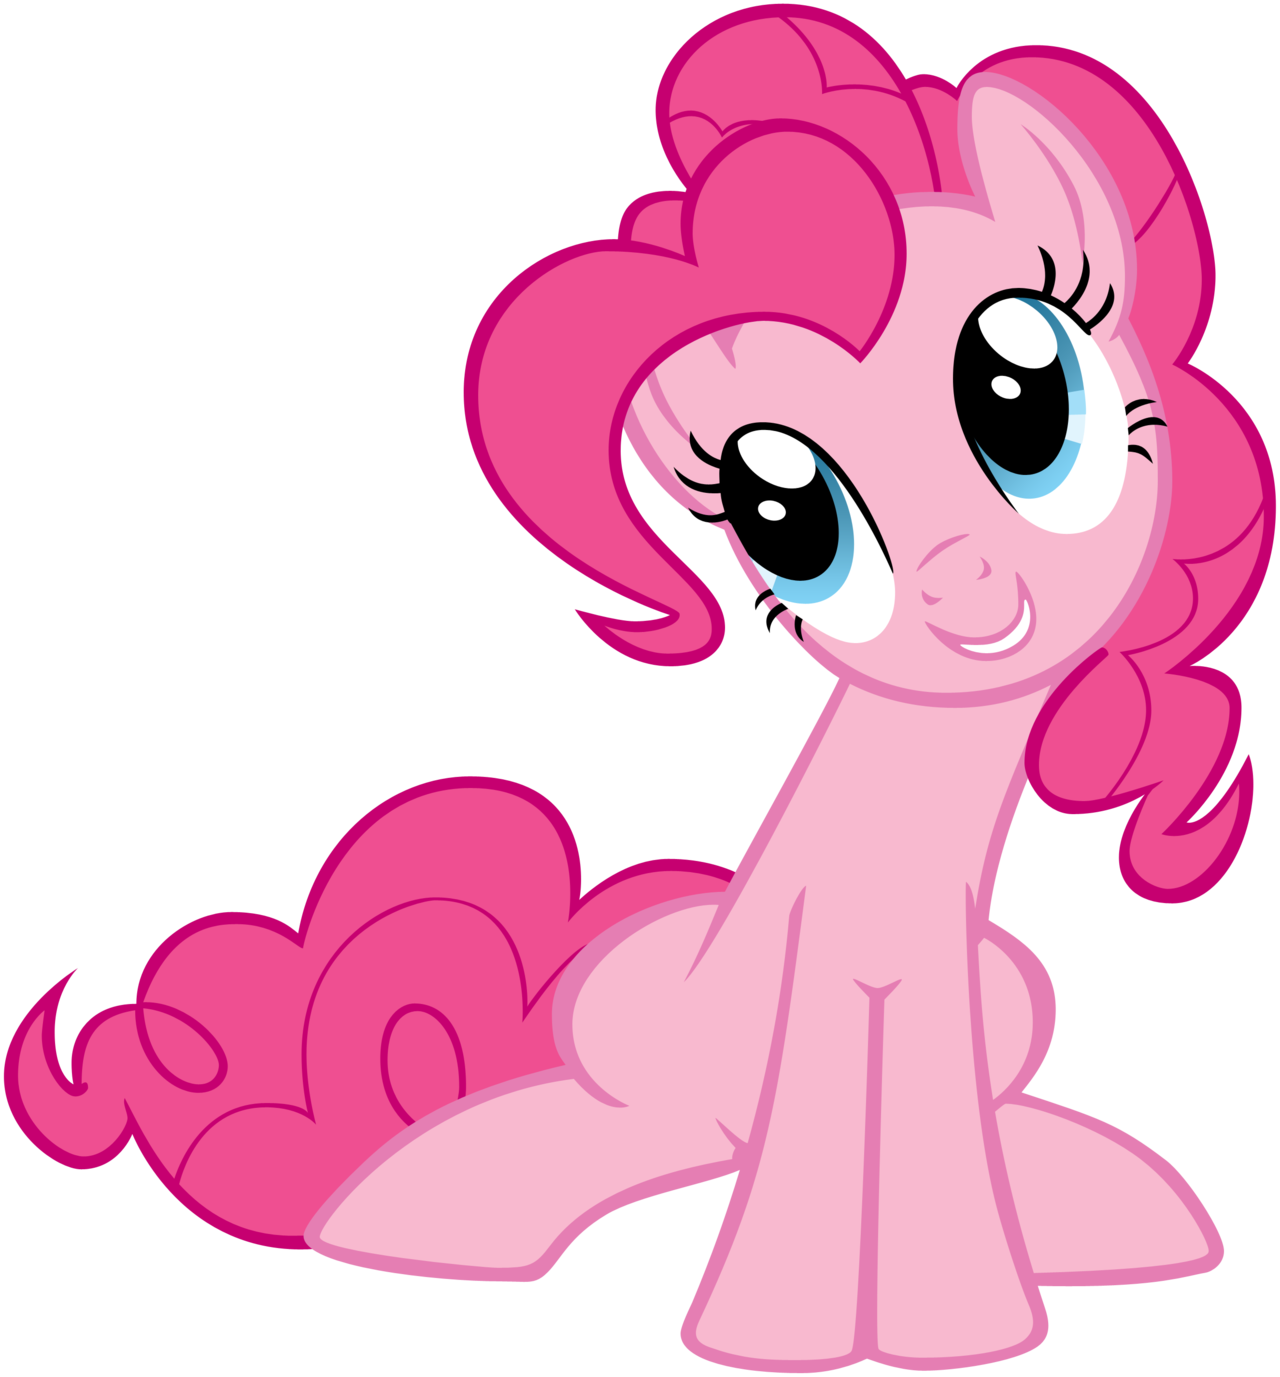  Pinkie  pie  Wiki My  little  pony  fan Fandom